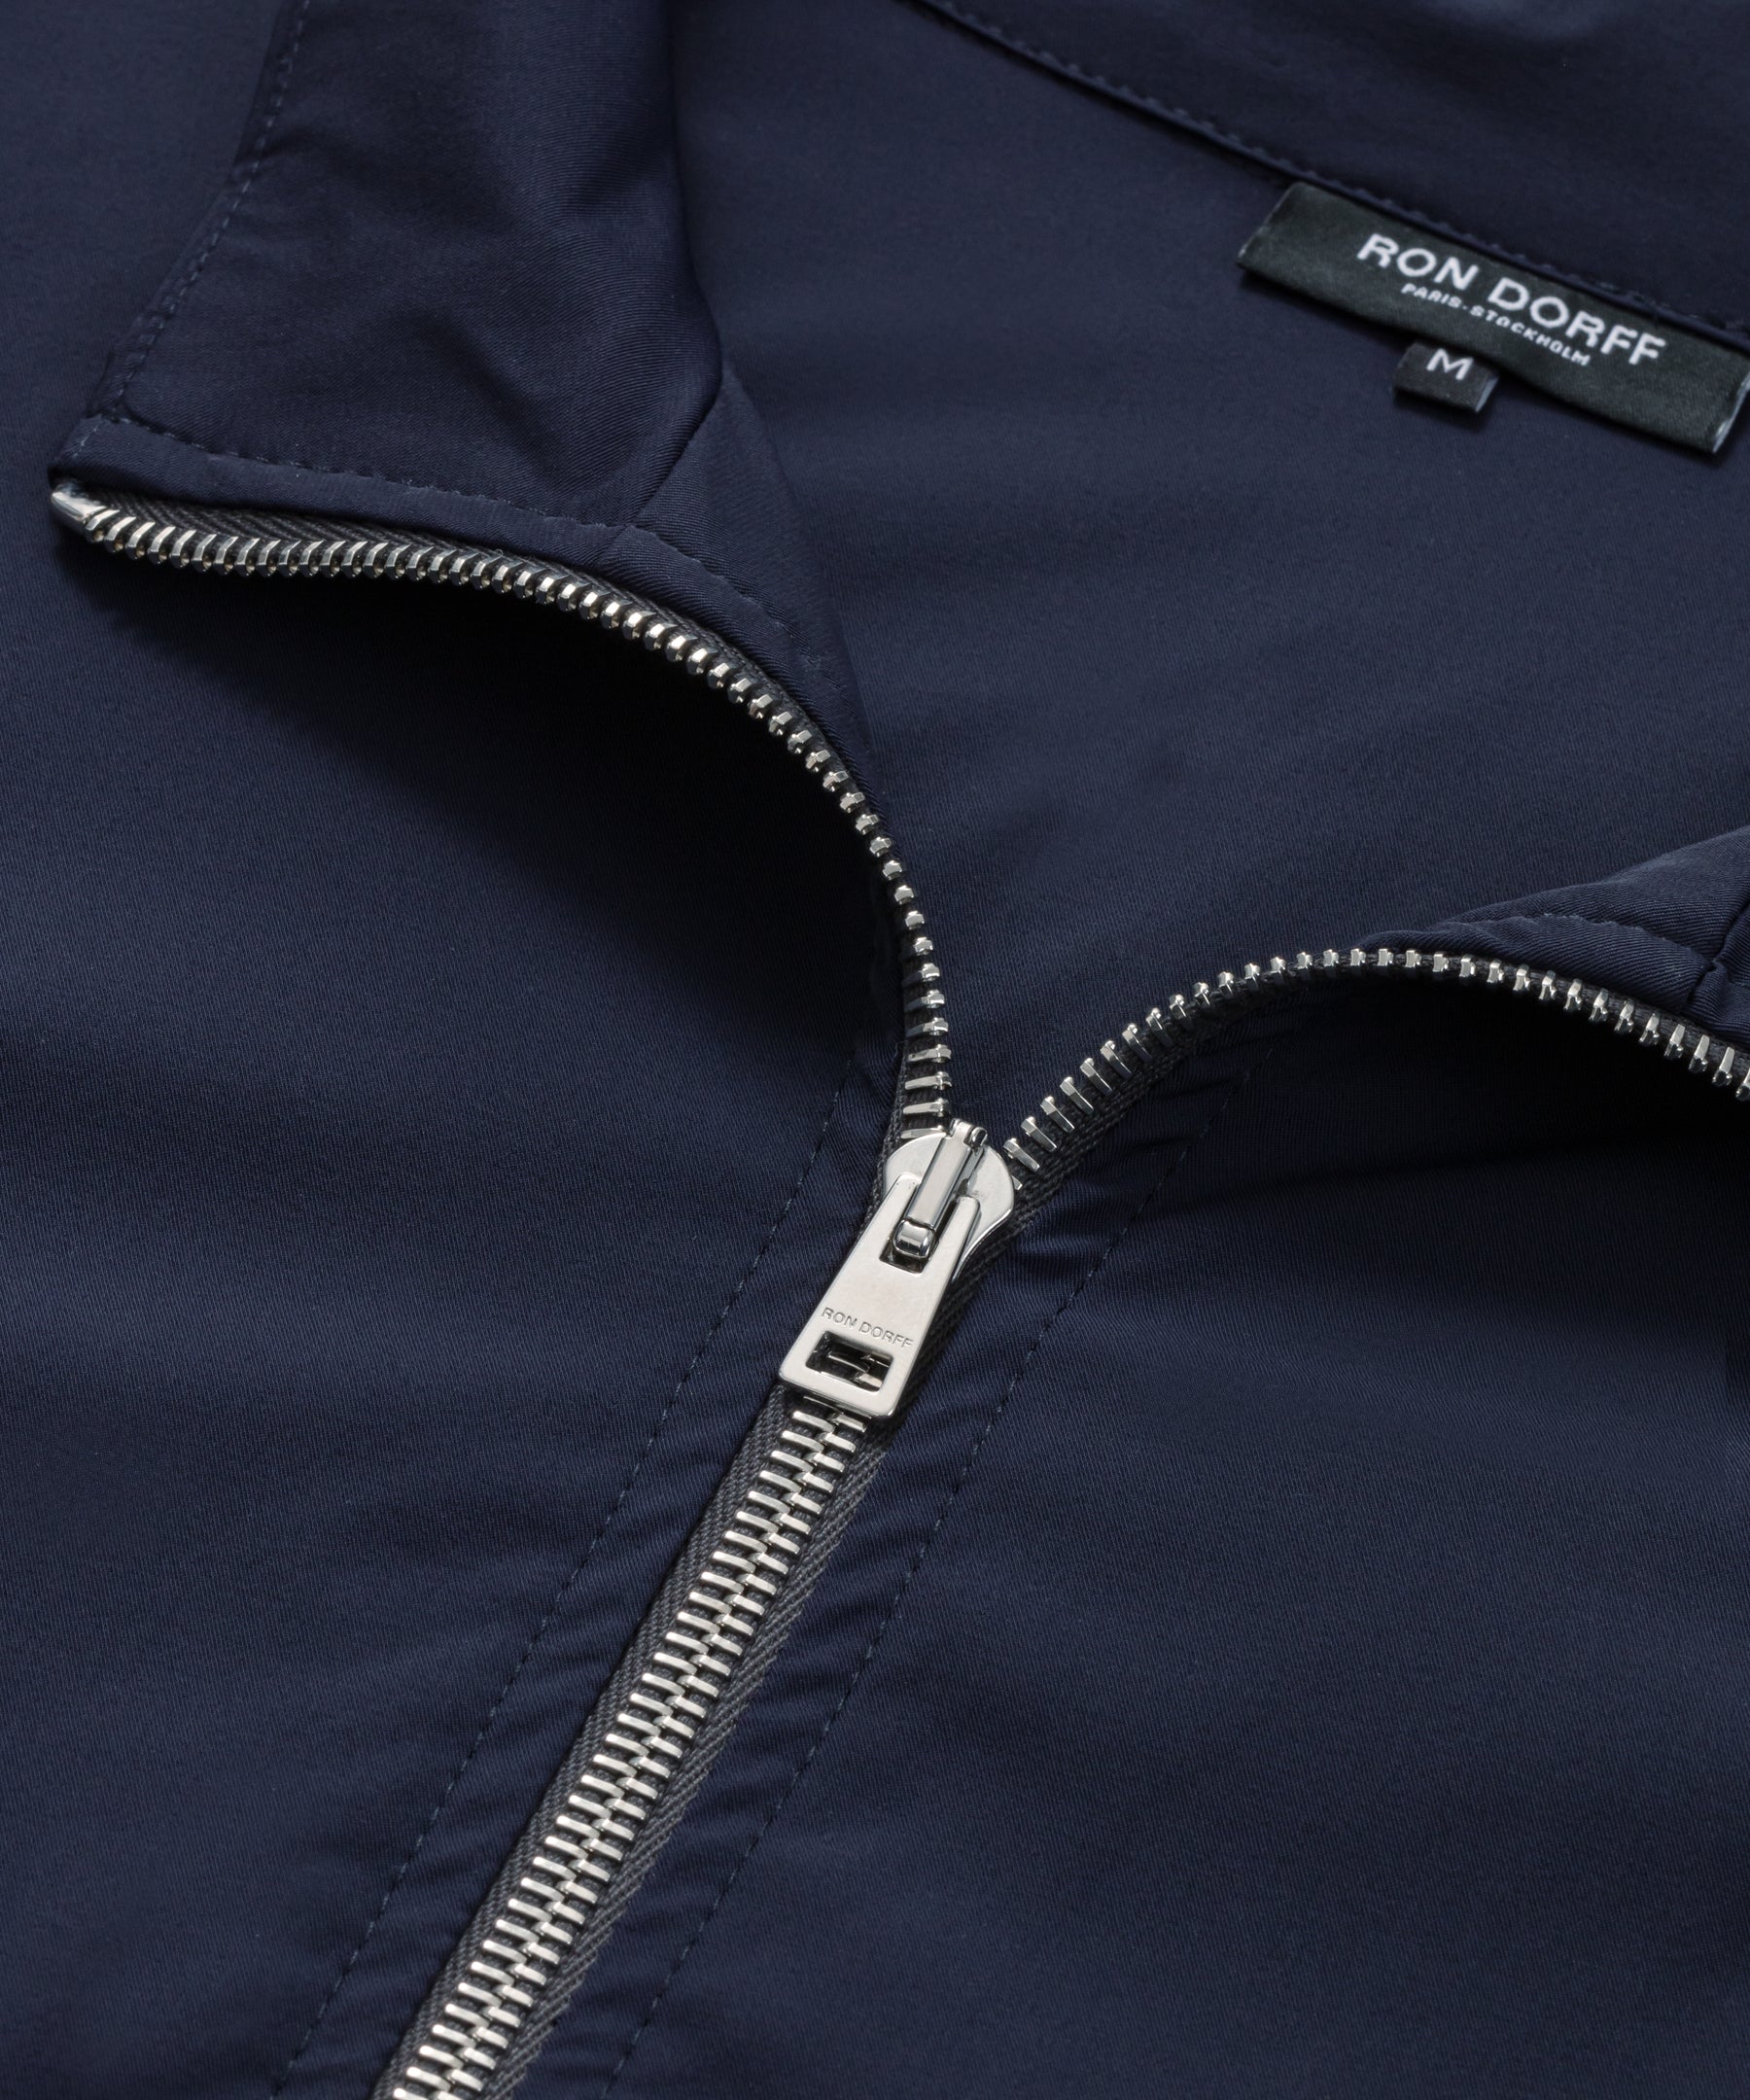 Veste zippée légère en polyamide: Bleu marine